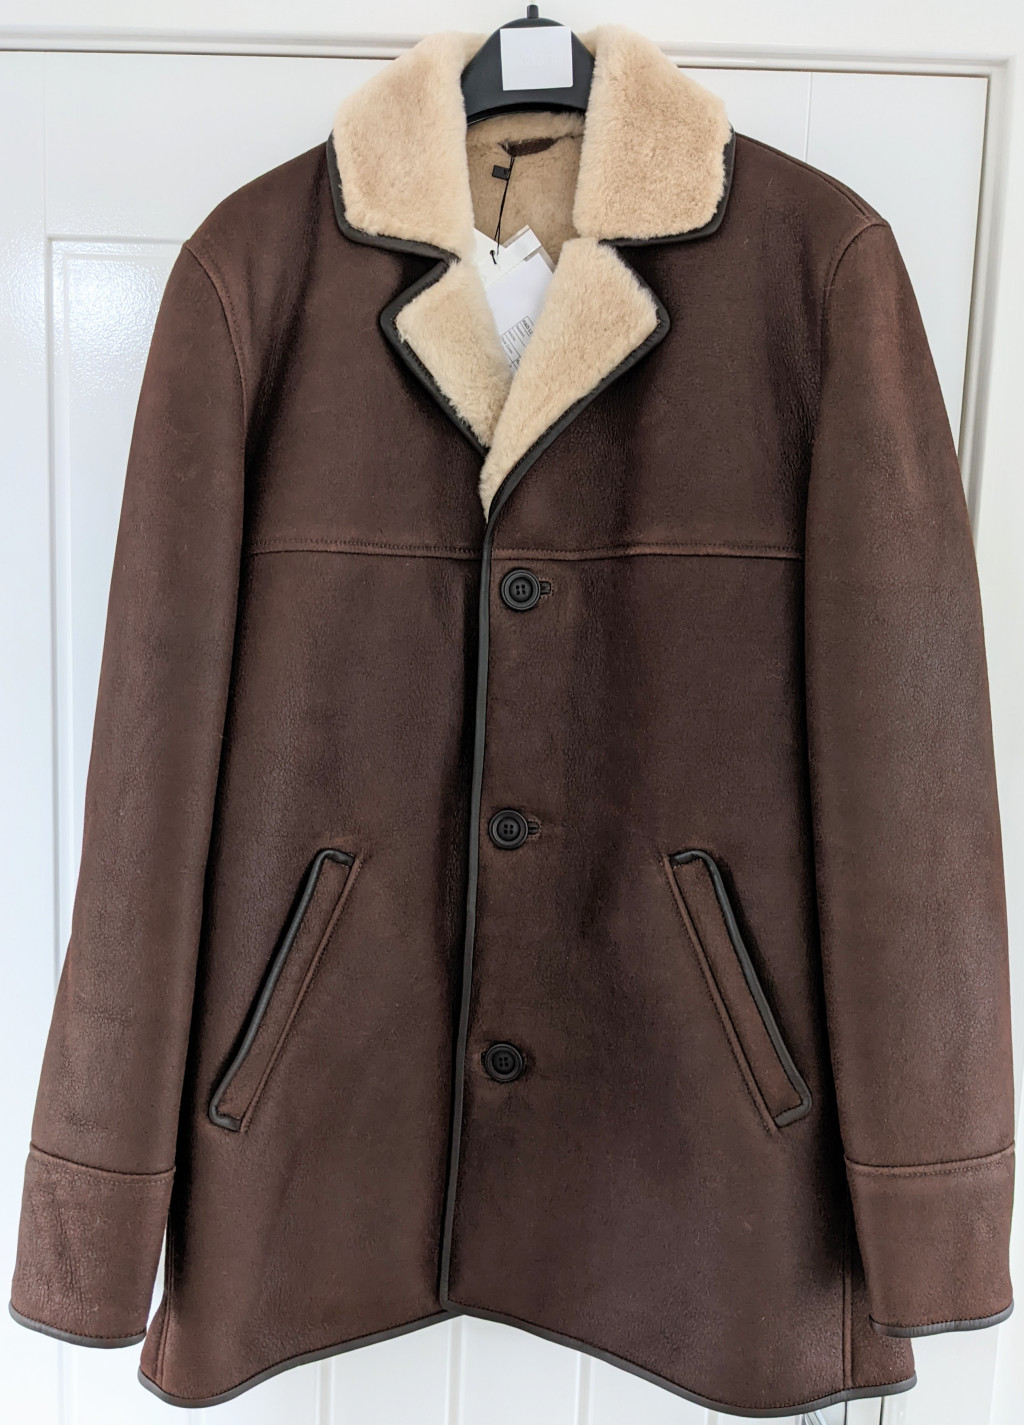 Mens Sheepskin Jackets and Coats | UK Leather Jackets